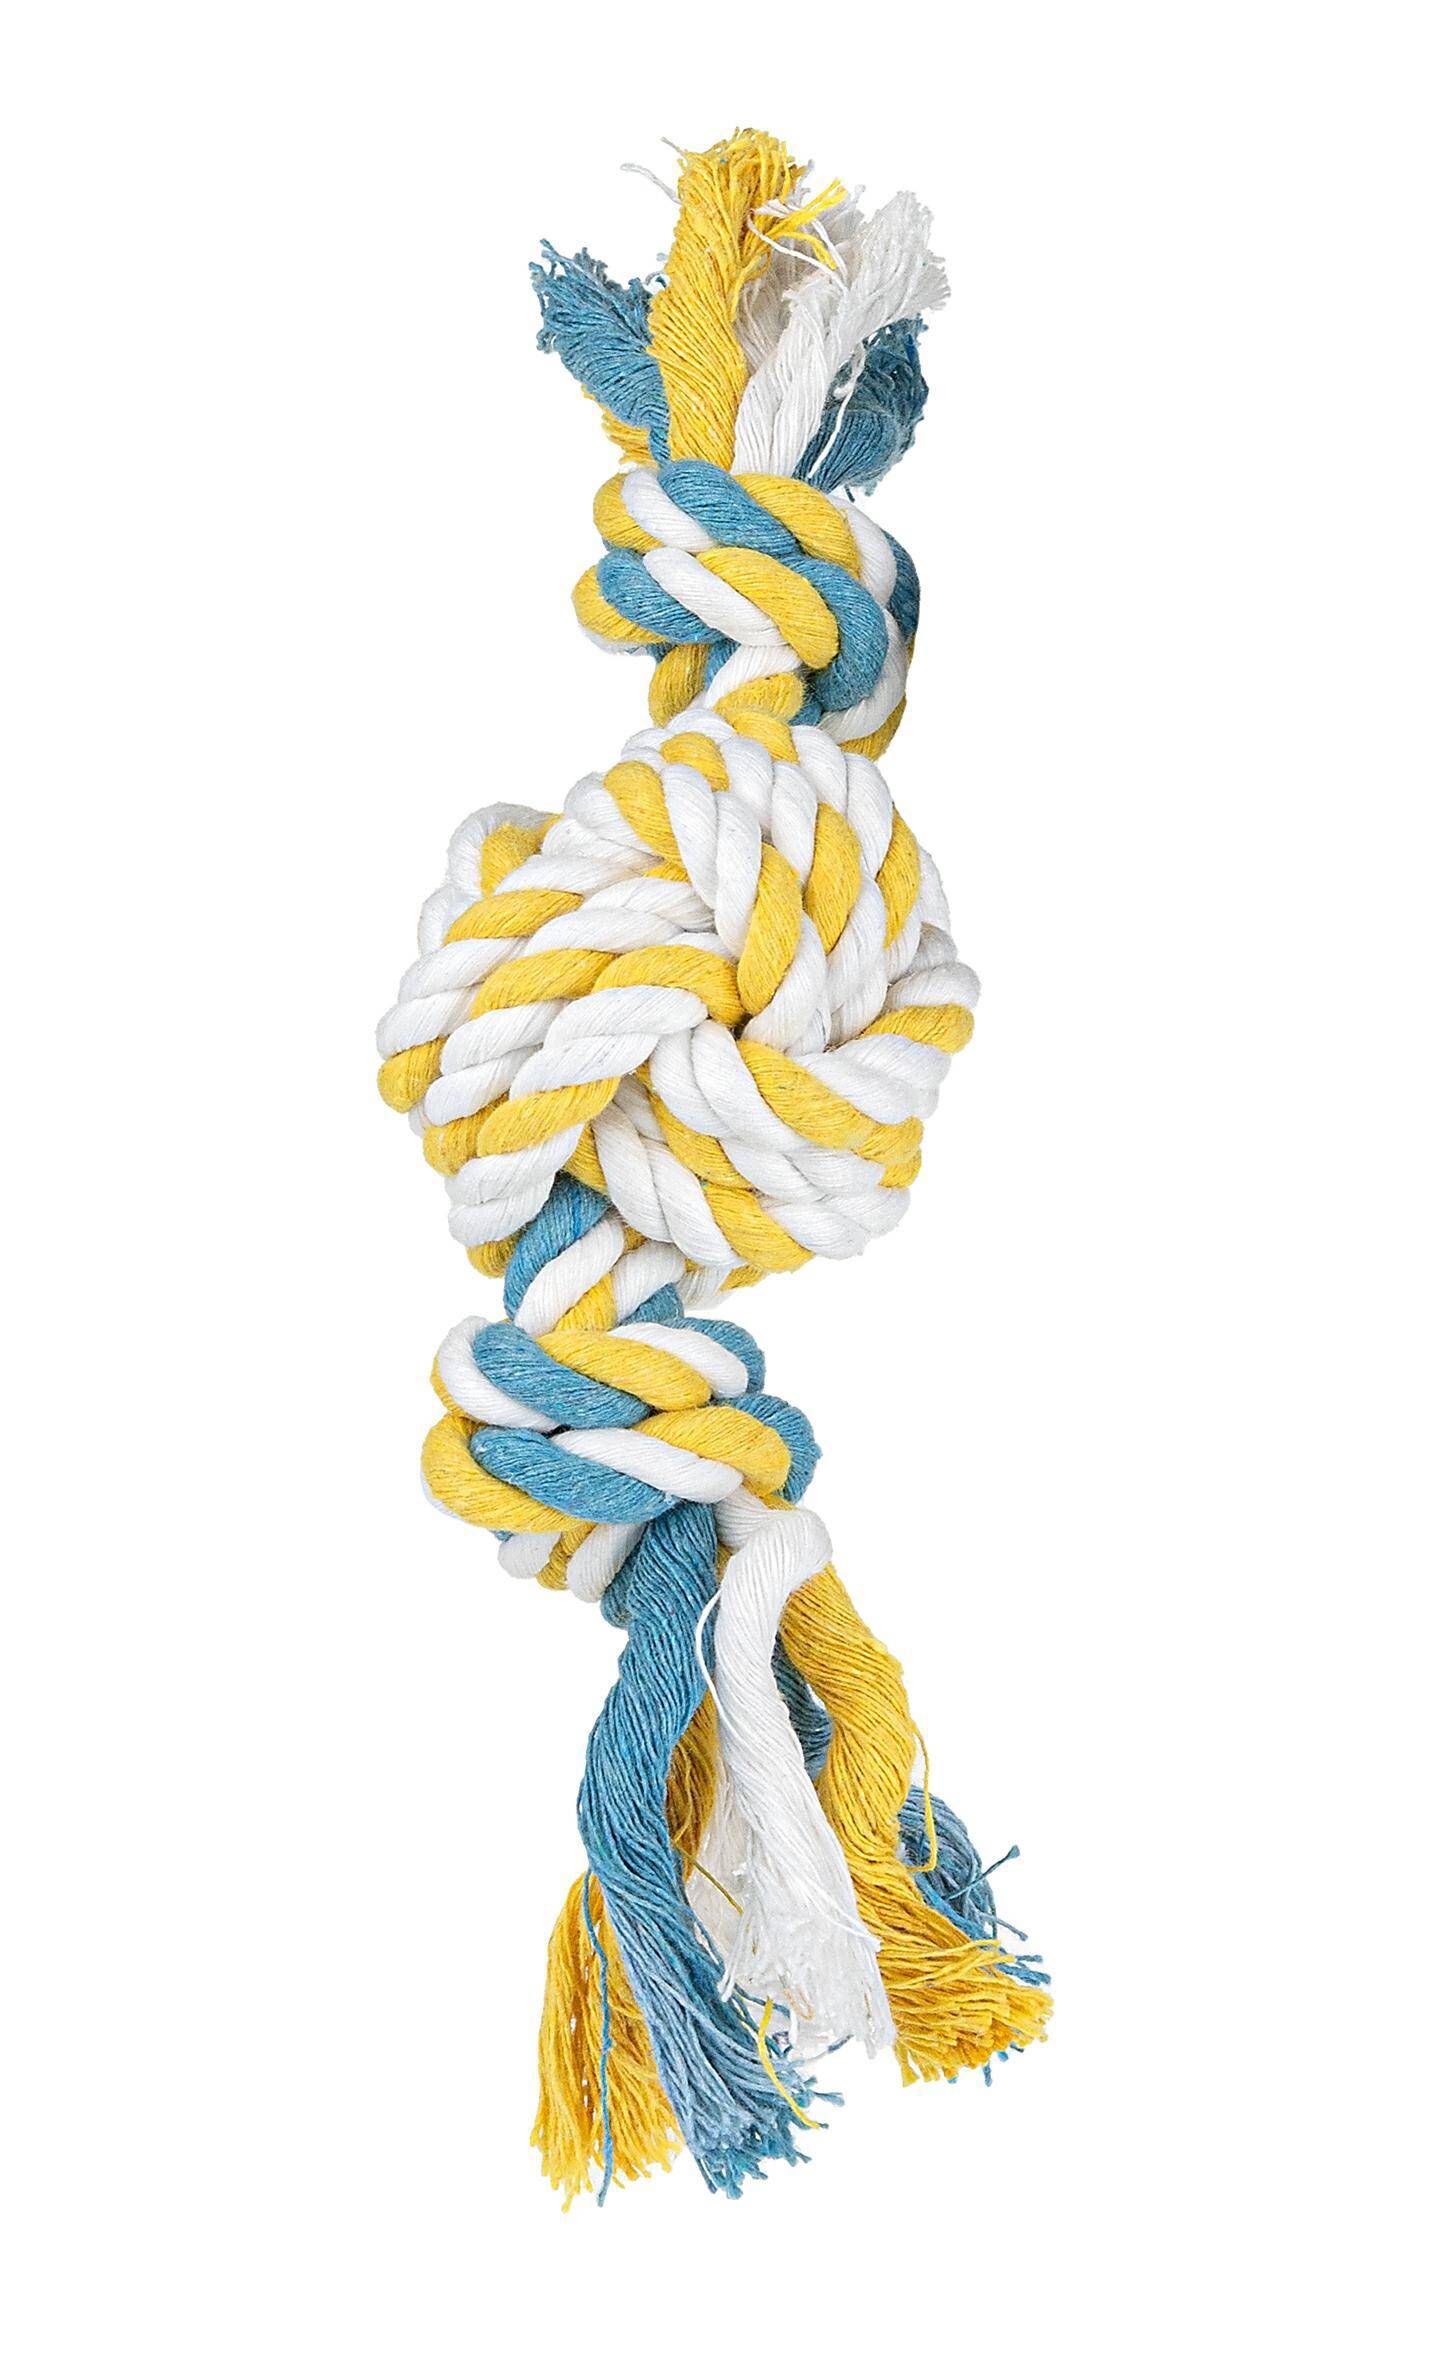 Zabawka Happet Z562 sznur węzły+duży węzeł 20cm (Zdjęcie 1)